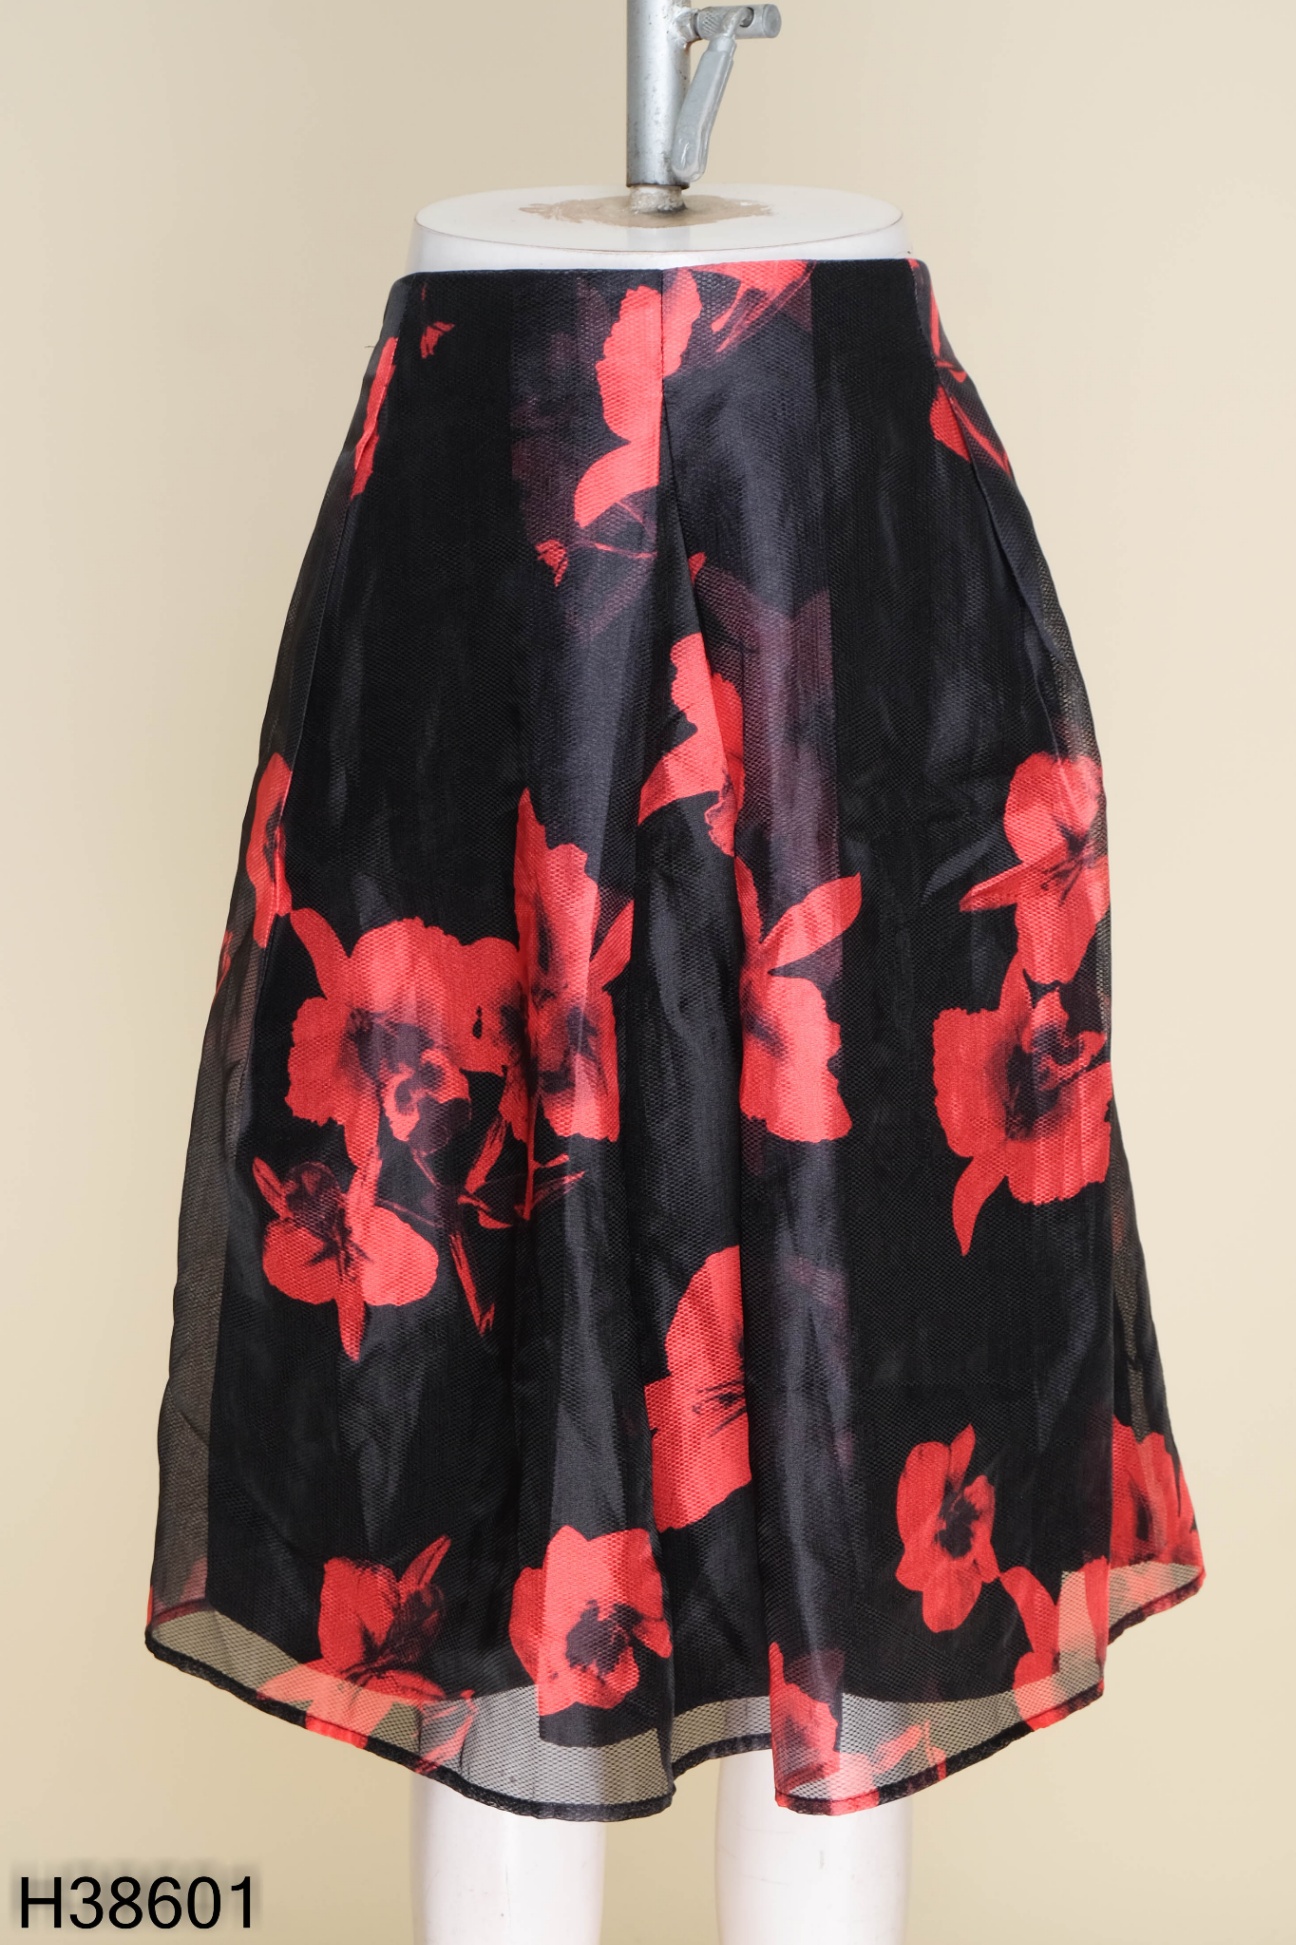 Chân váy IVY MODA đen họa tiết hoa đỏ